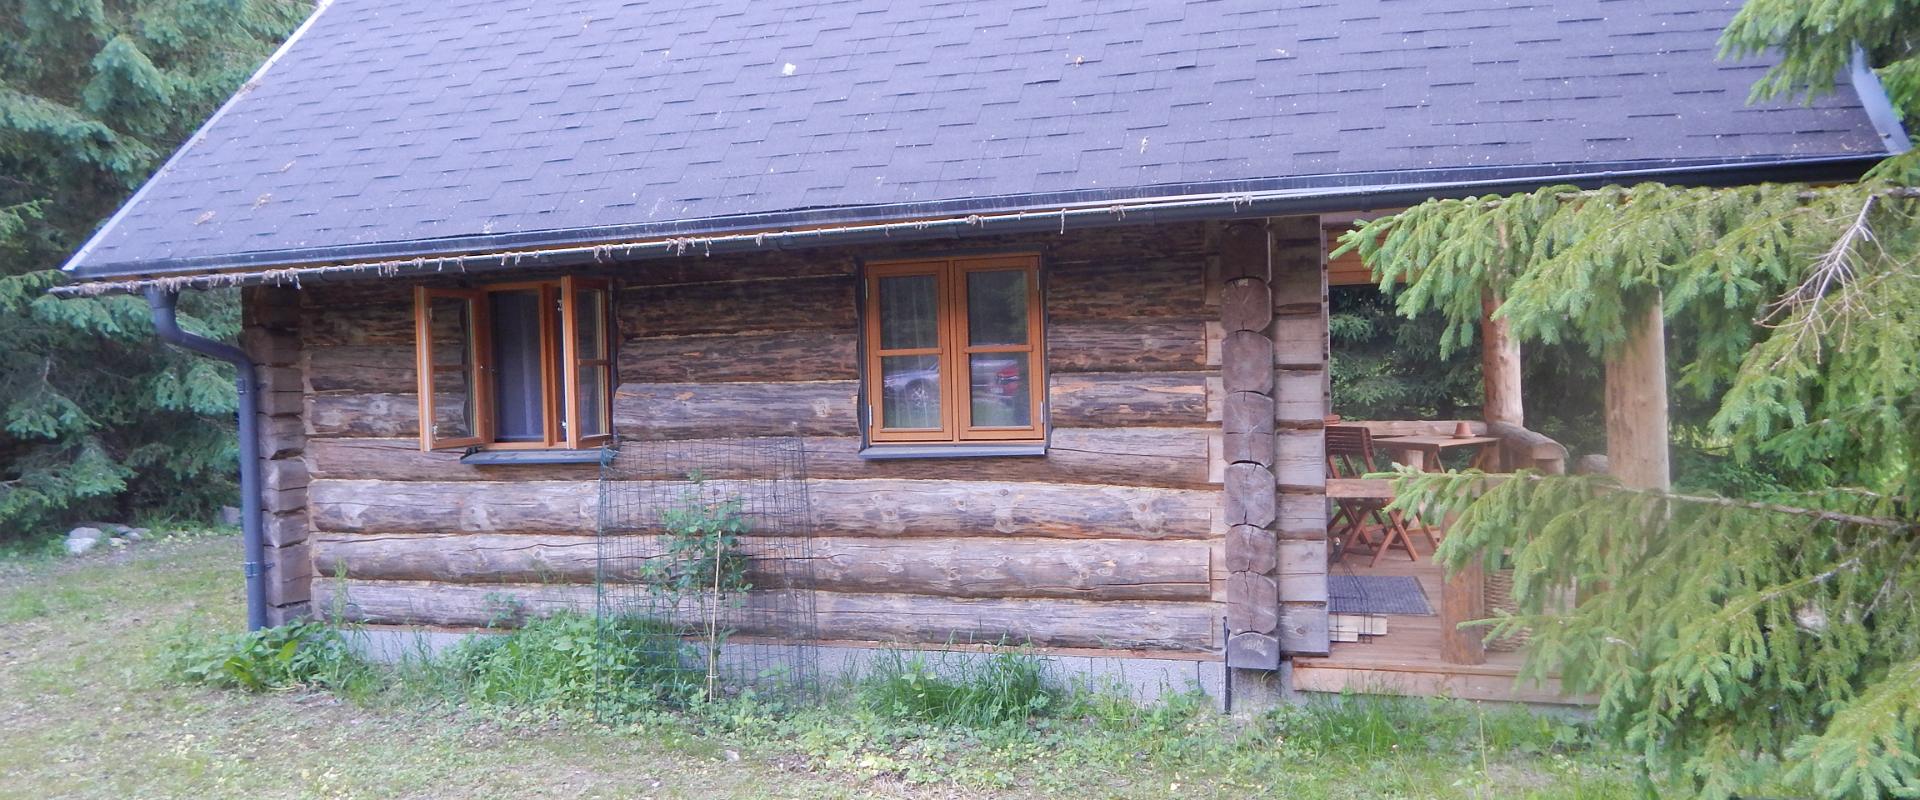 Haaviku Nature Cottage